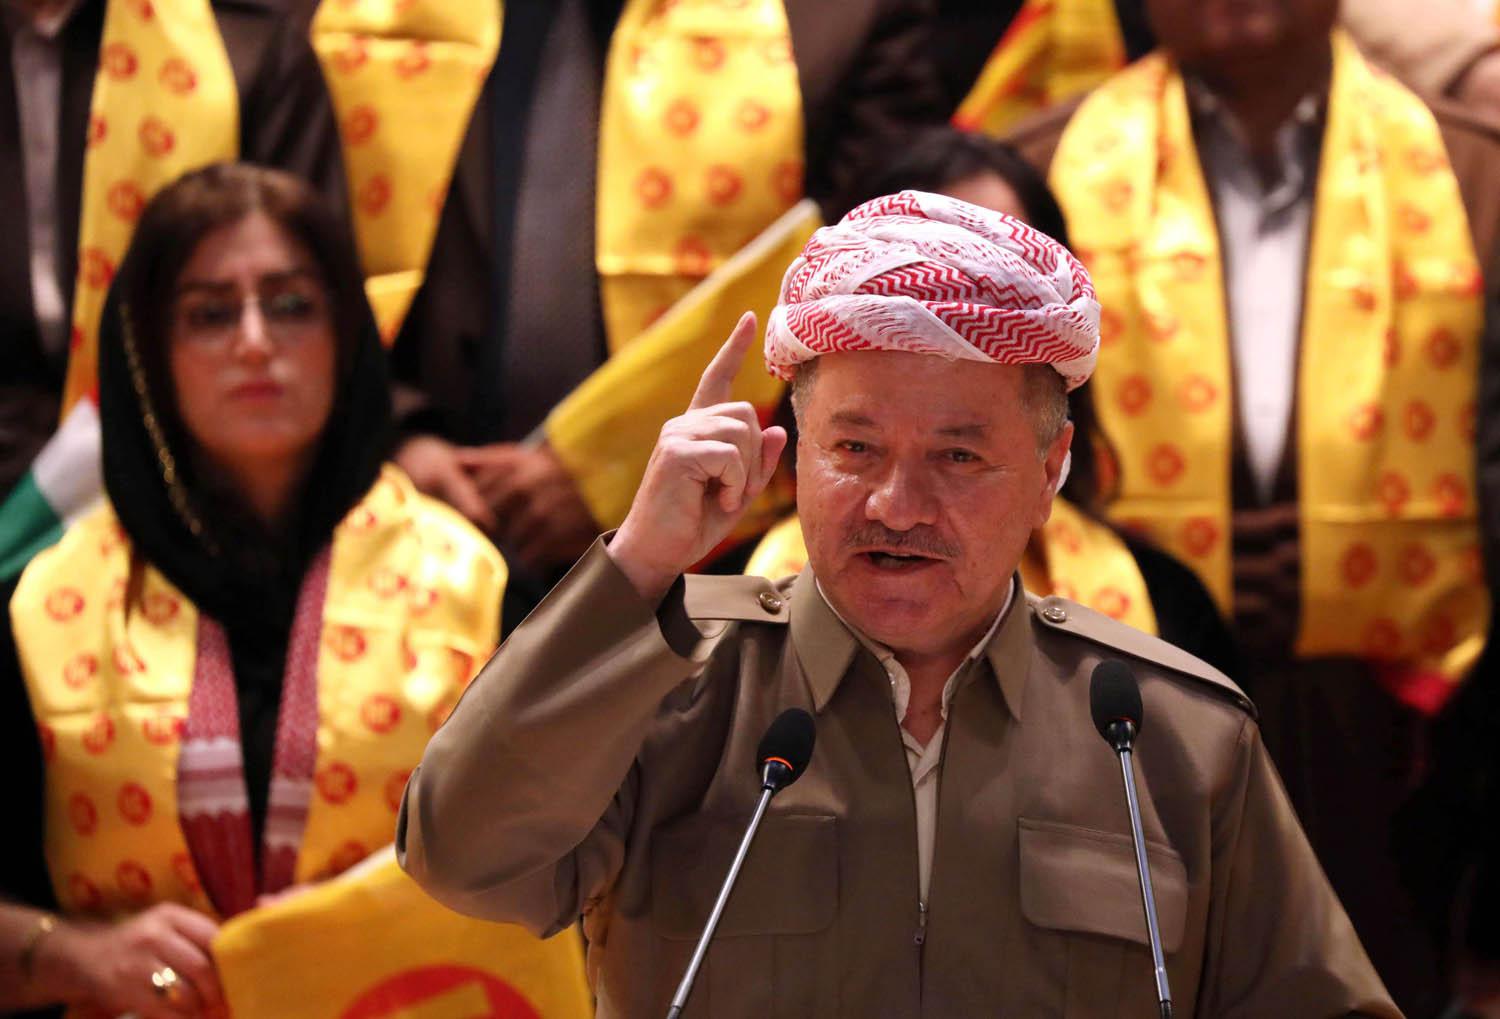 بارزاني يتحدث مع اعضاء في حزبه الديمقراطي الكردستاني